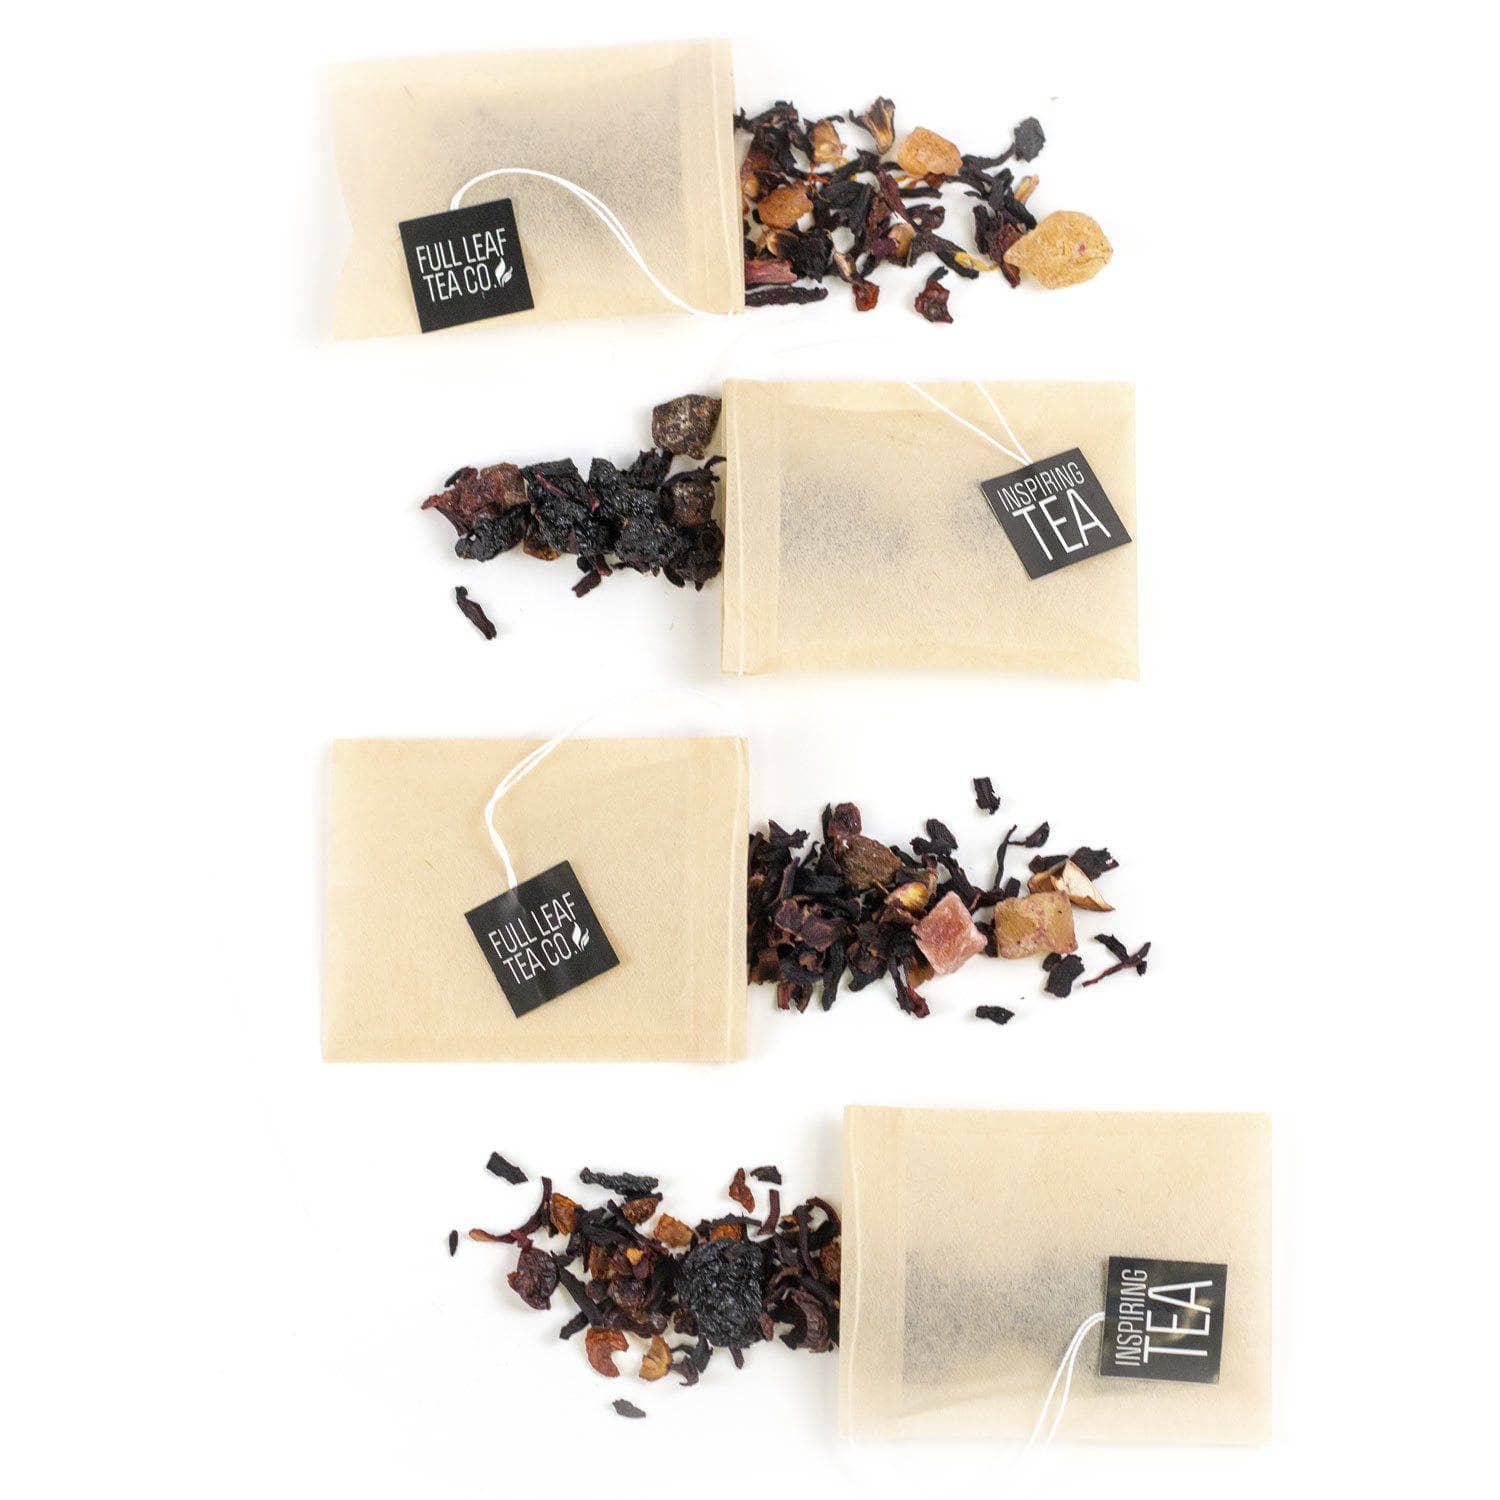 Fruit Blend Sampler  -  Loose Leaf Tea  -  Full Leaf Tea Company